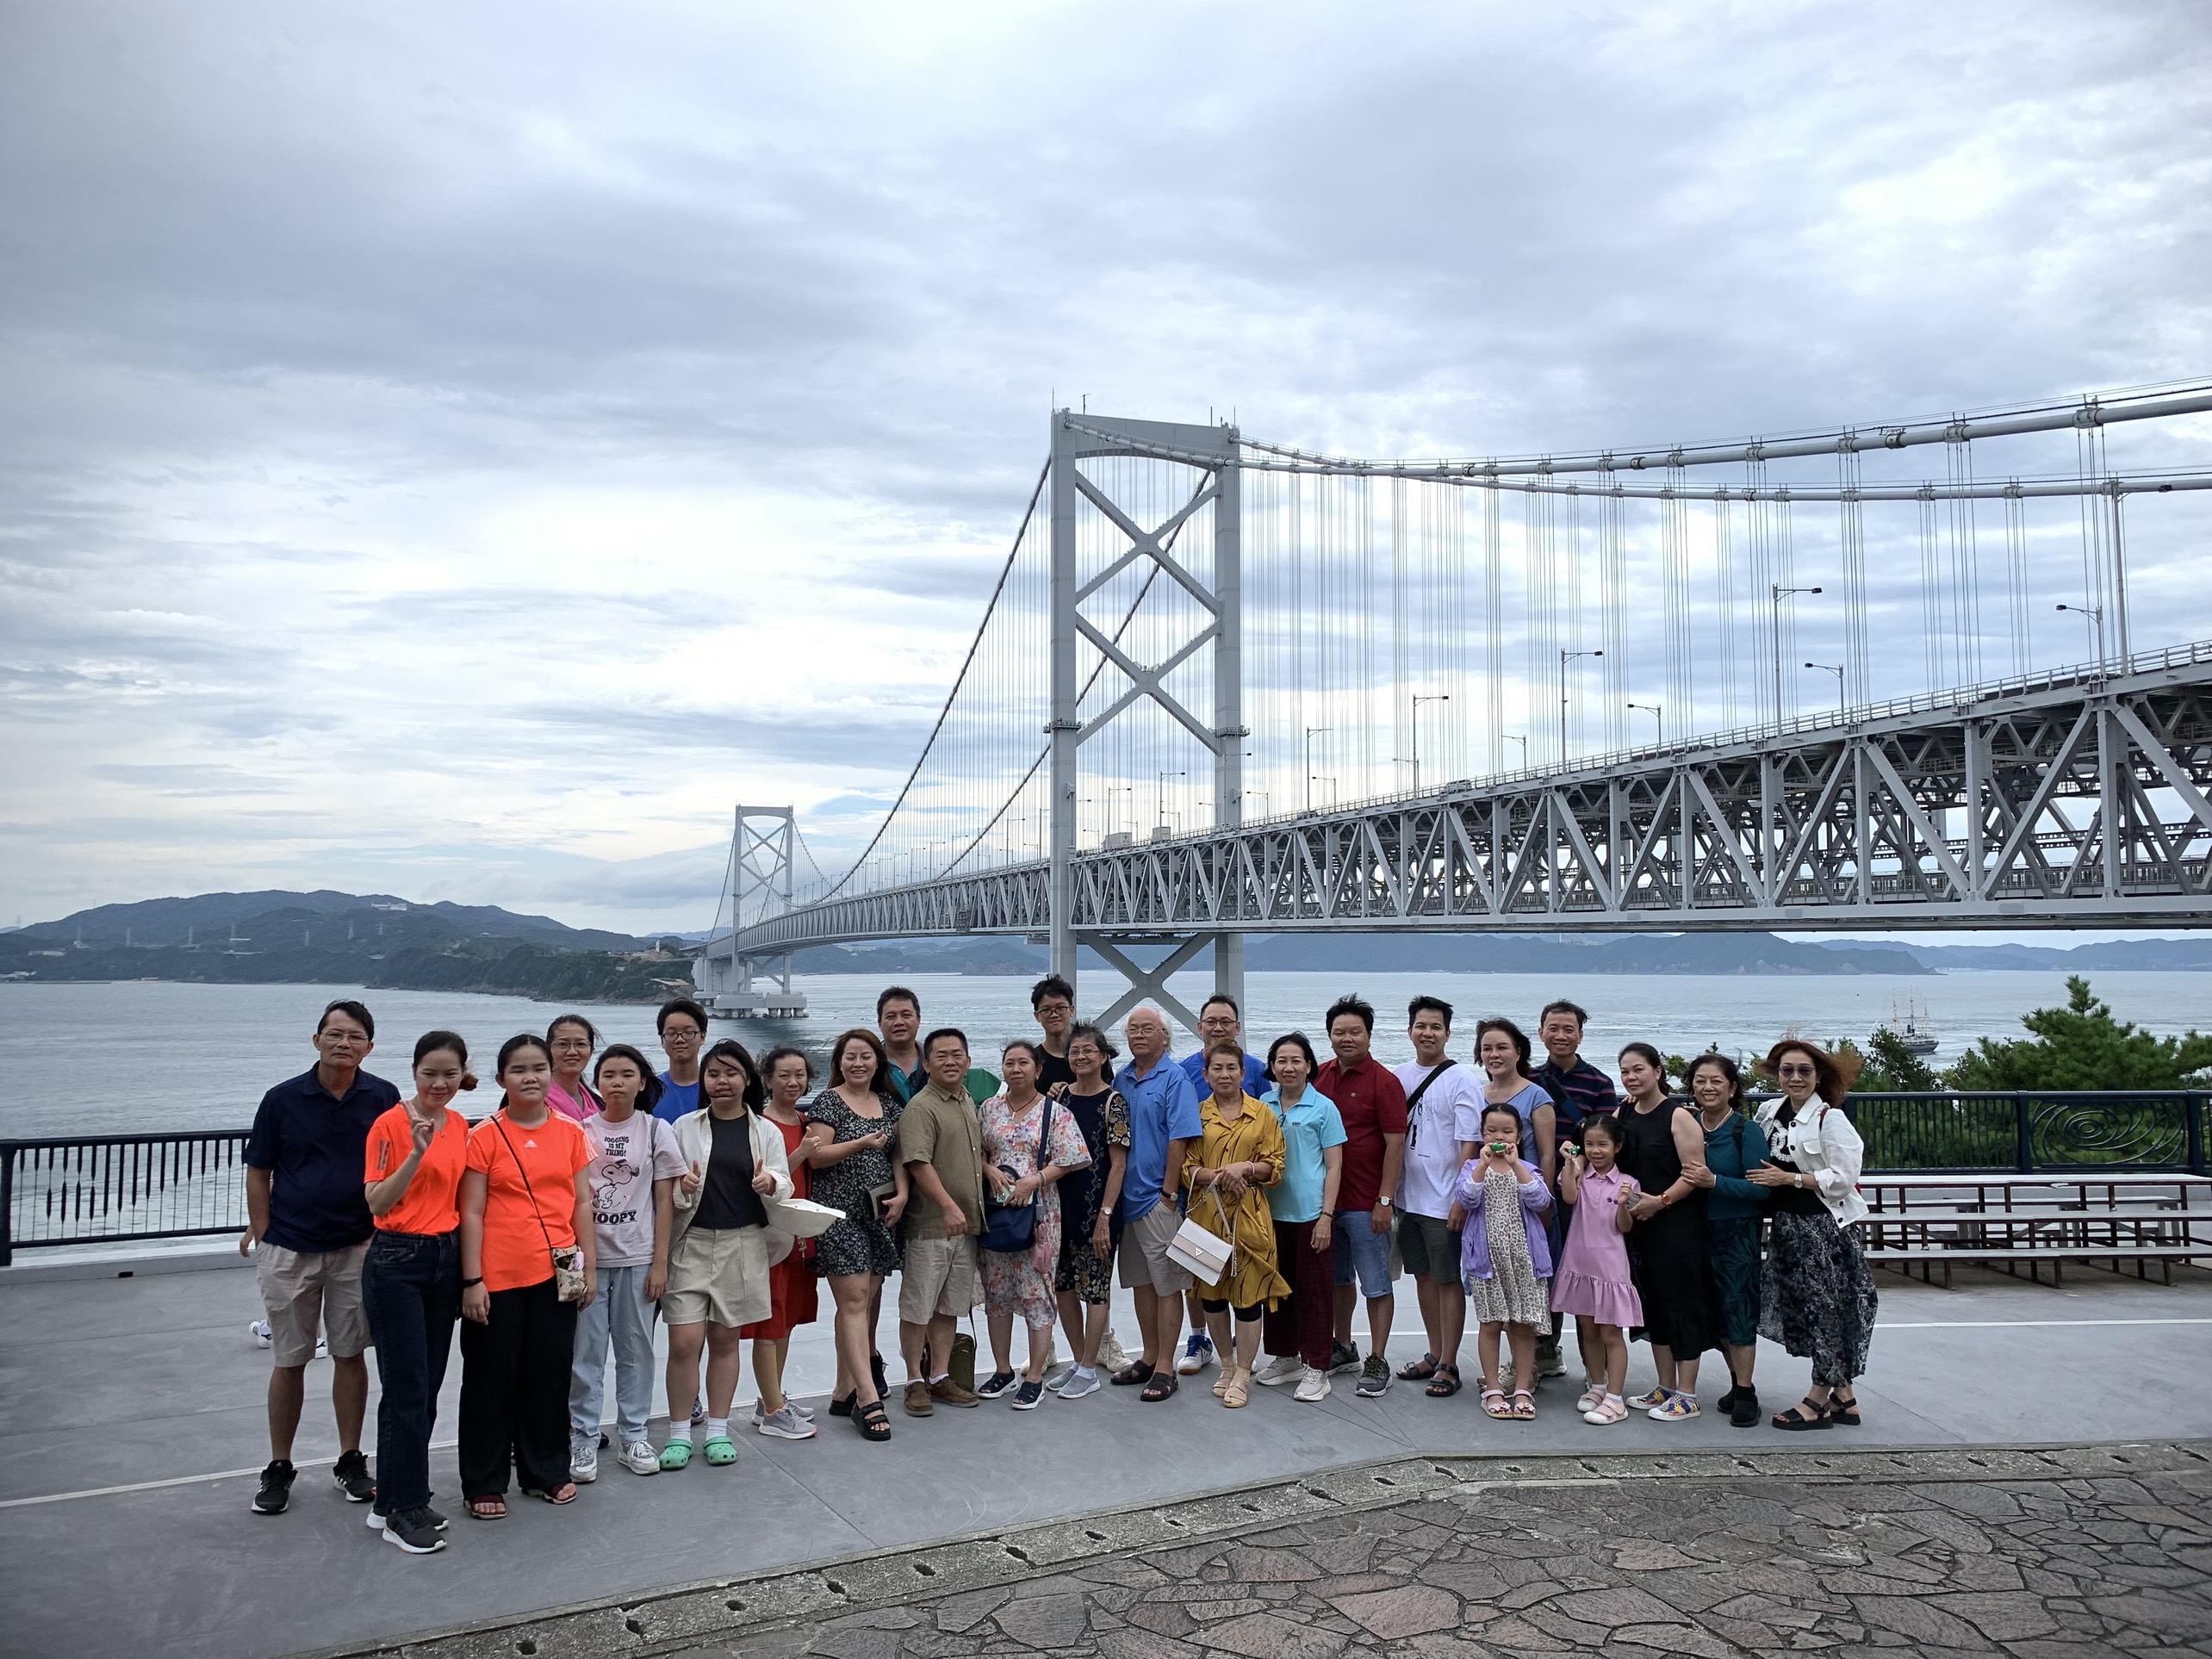 Du lịch Nhật Bản - Đoàn 70 khách UEF Khám phá mùa hè Nhật Bản Kyoto - Osaka - Nara - Kobe (6 ngày 5 đêm)